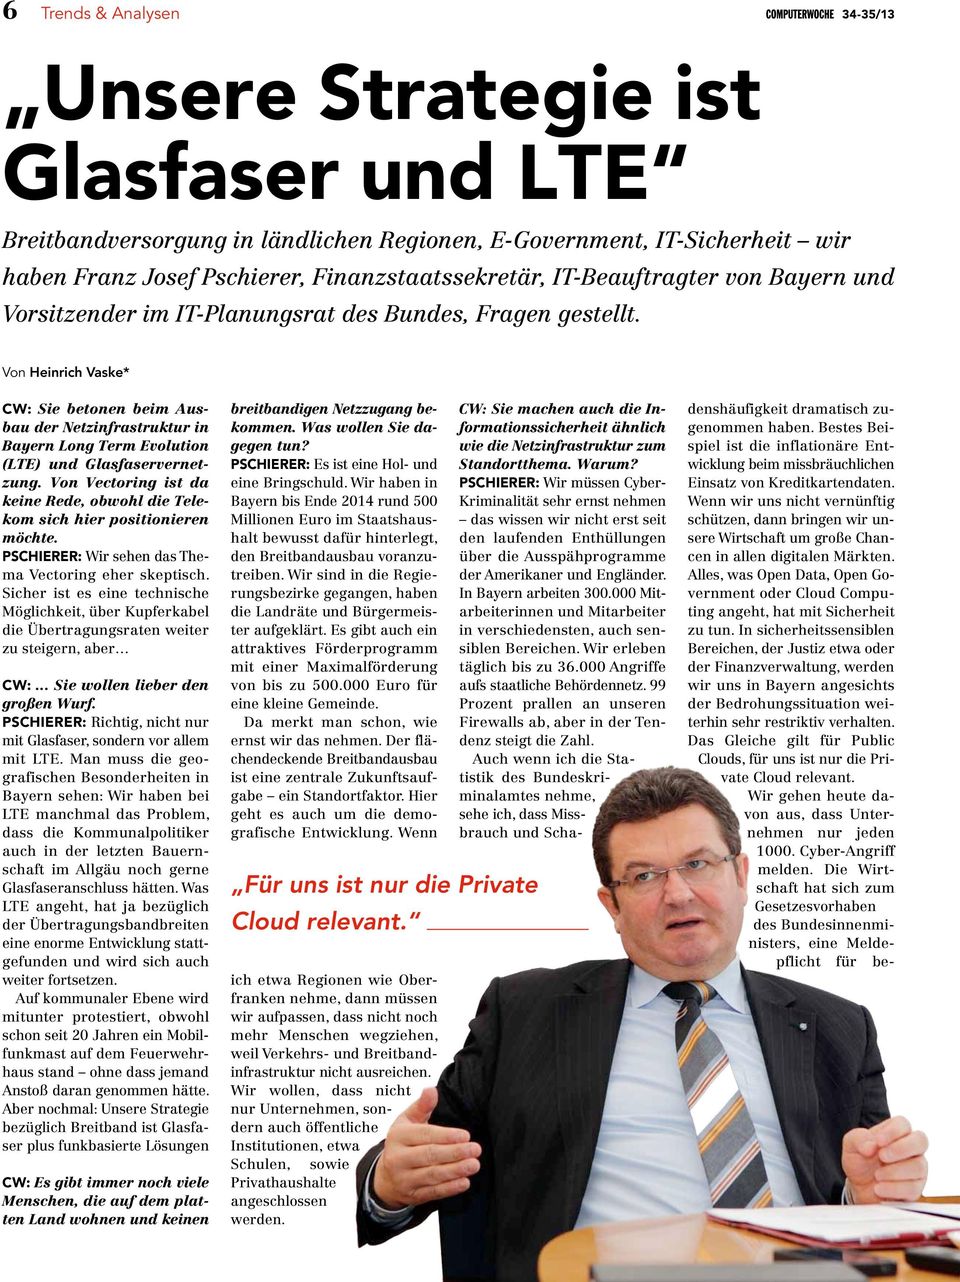 Von Heinrich Vaske* CW: Sie betonen beim Aus - bau der Netzinfrastruktur in Bayern Long Term Evolution (LTE) und Glasfaservernetzung.